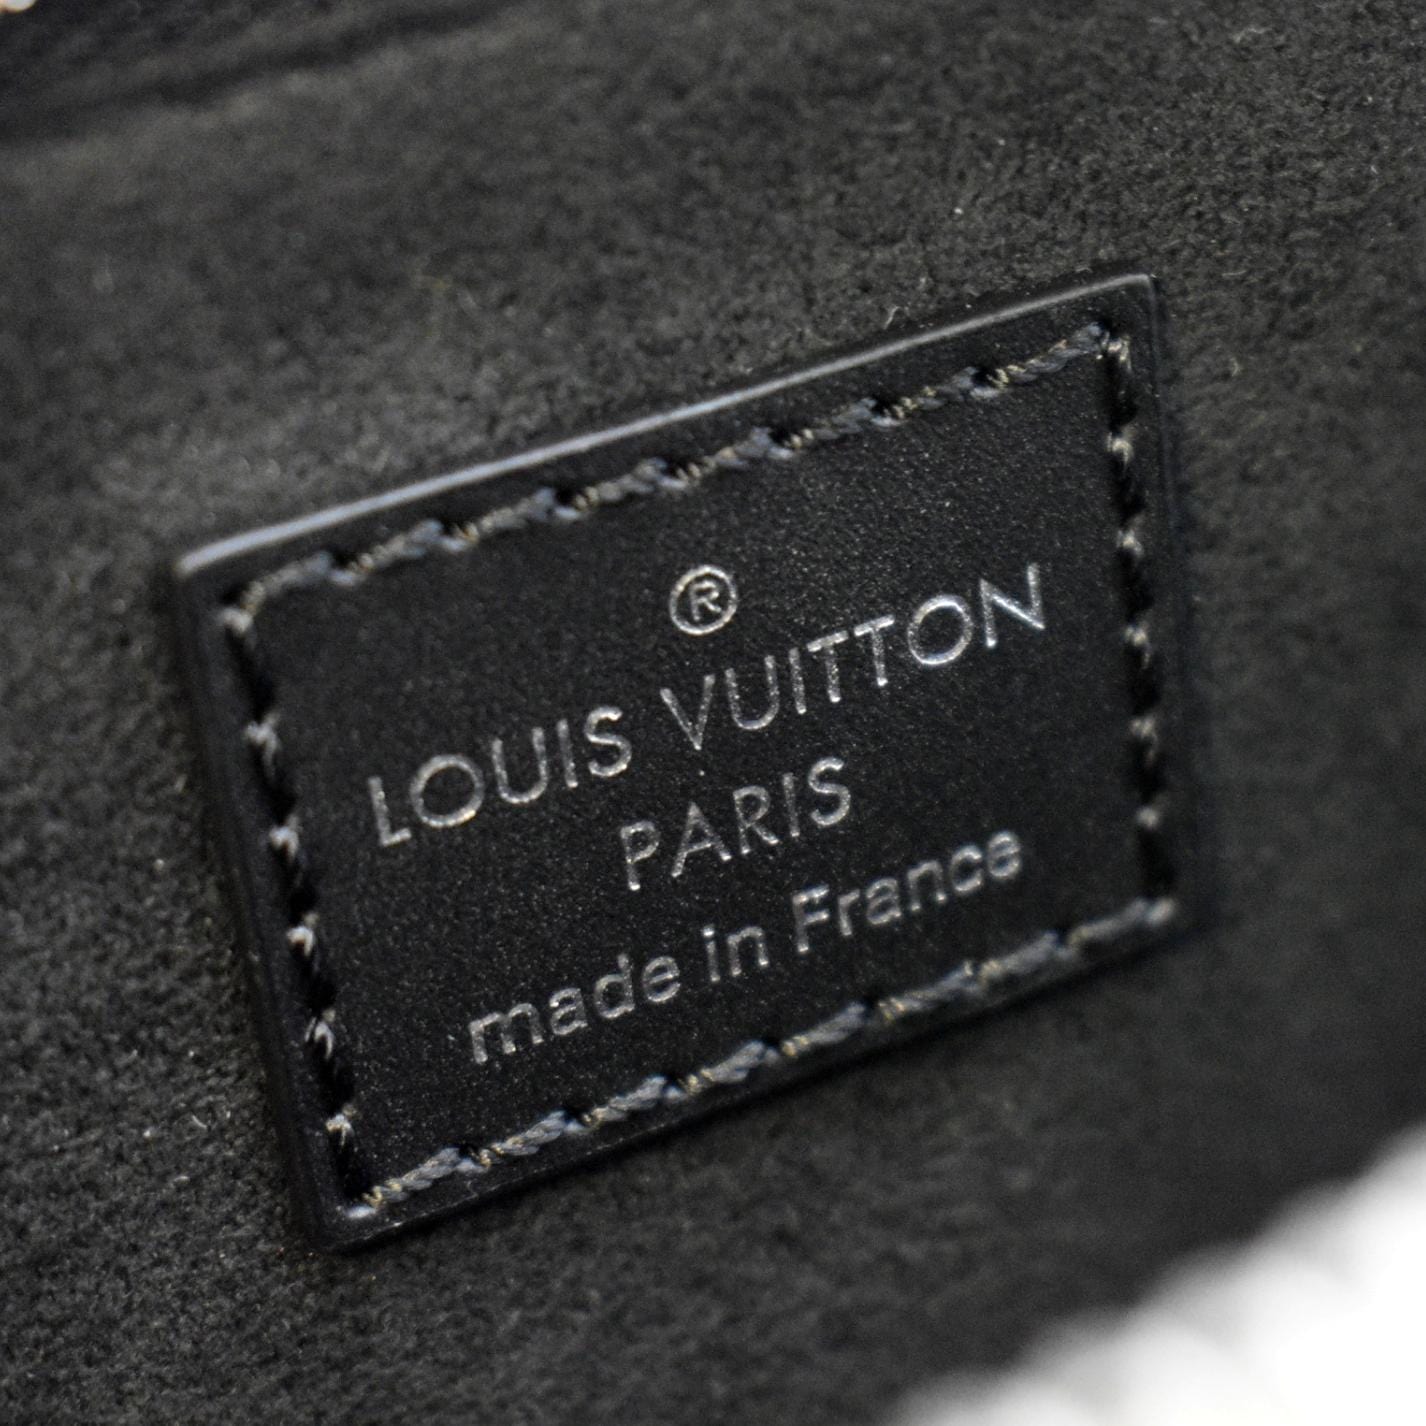 Louis Vuitton Black Leather Luggage Name Tag Louis Vuitton